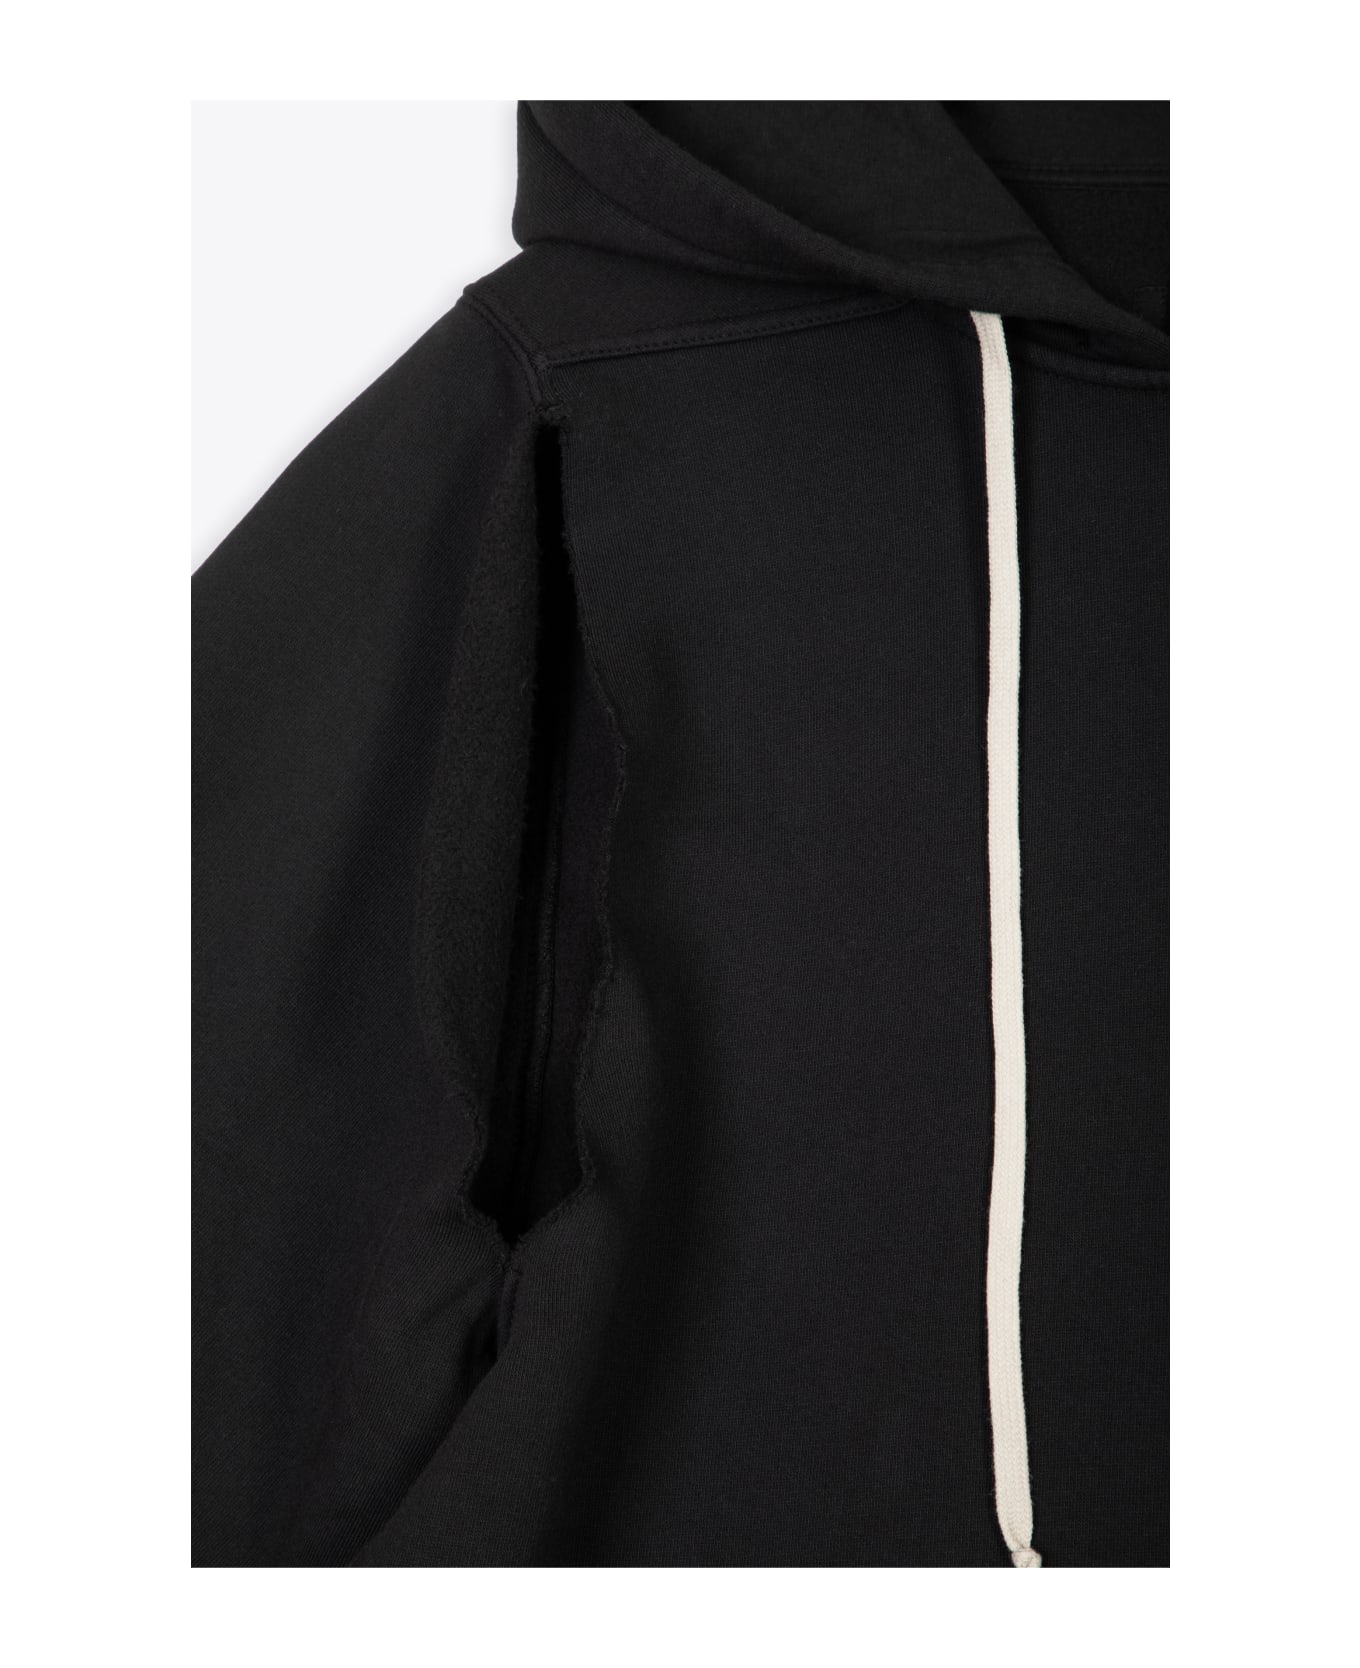 DRKSHDW Cape Sleeve Jumbo Hoodie Black Cotton Oversized Hoodie - Cape Sleeve Jumbo Hoodie - Black